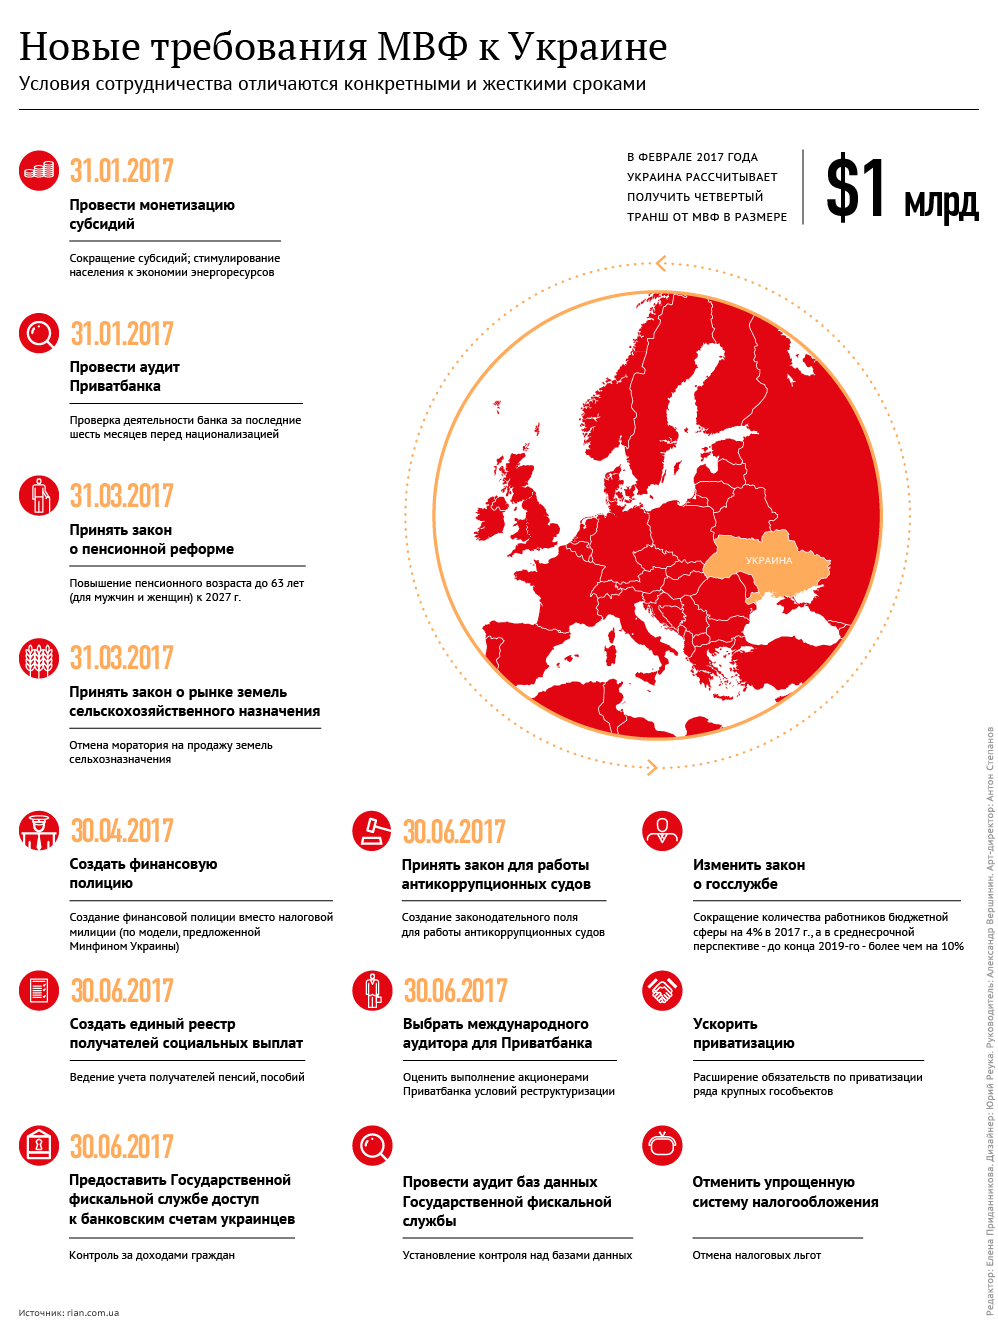 Шито-крыто. Новые требования МВФ к Украине. Инфографика